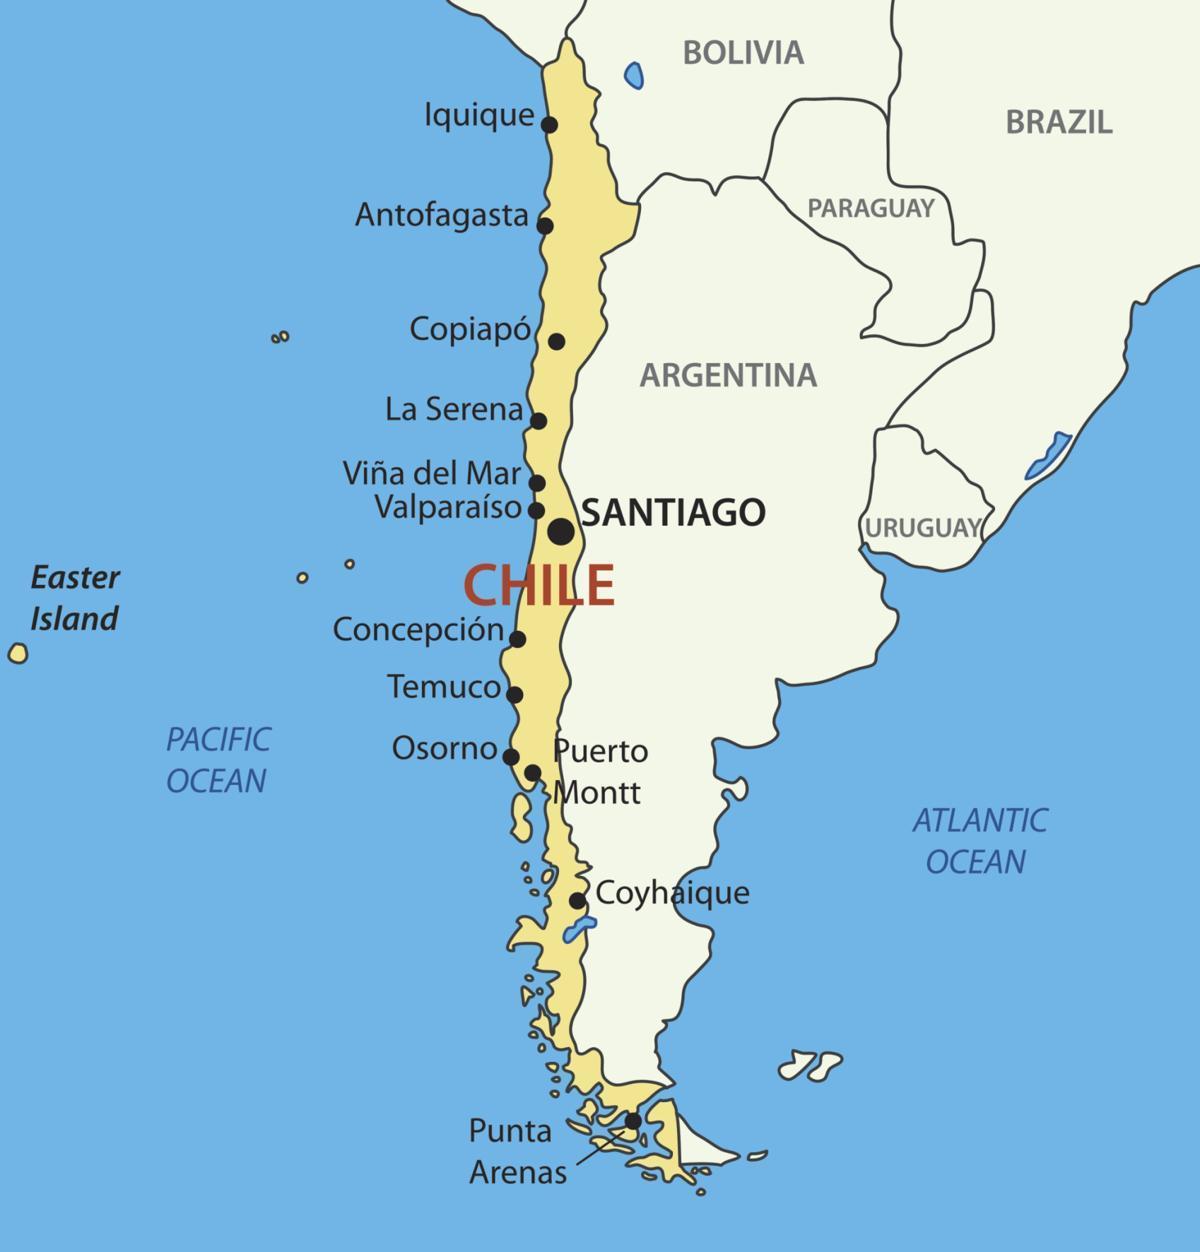 Mapa de Chile en el país